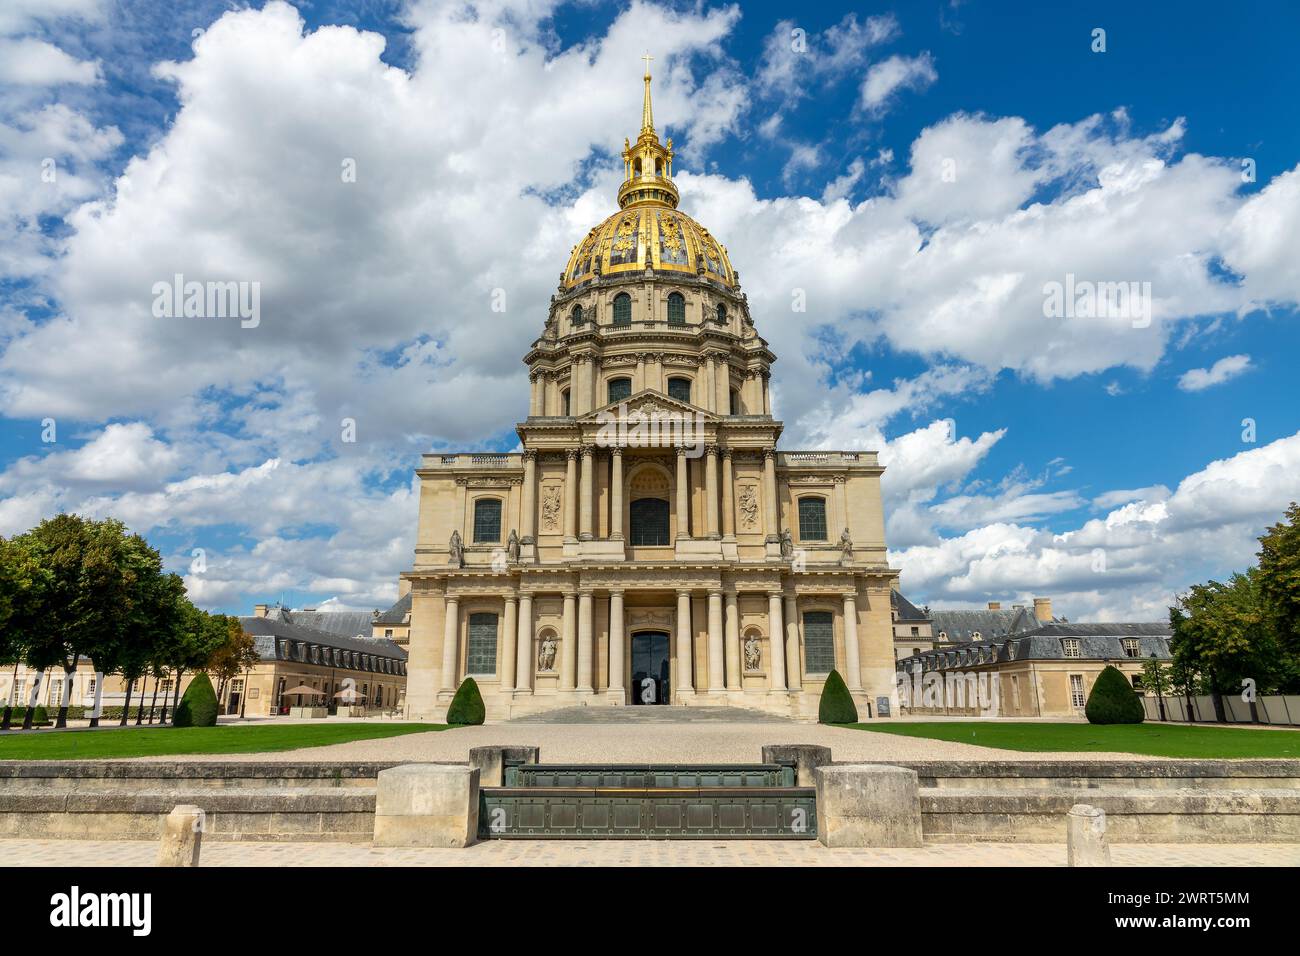 Hôtel des Invalides, célèbre monument avec le tombeau de Napoléon sous le dôme doré à Paris, France Banque D'Images